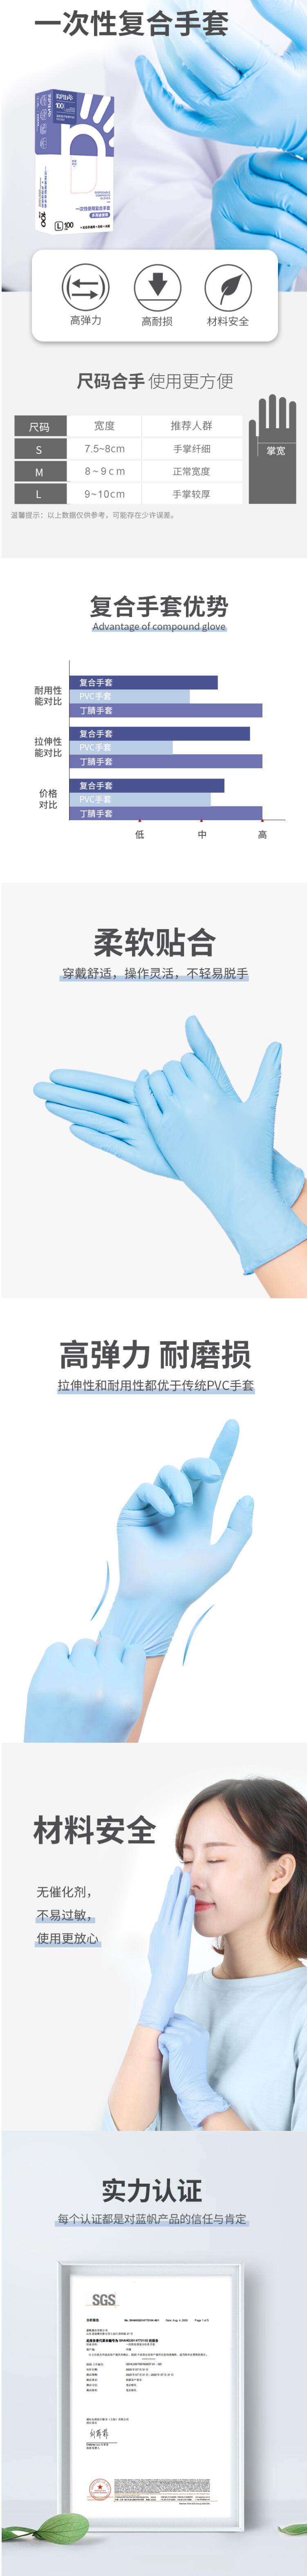 蓝帆医疗C2176一次性耐磨PVC手套图片